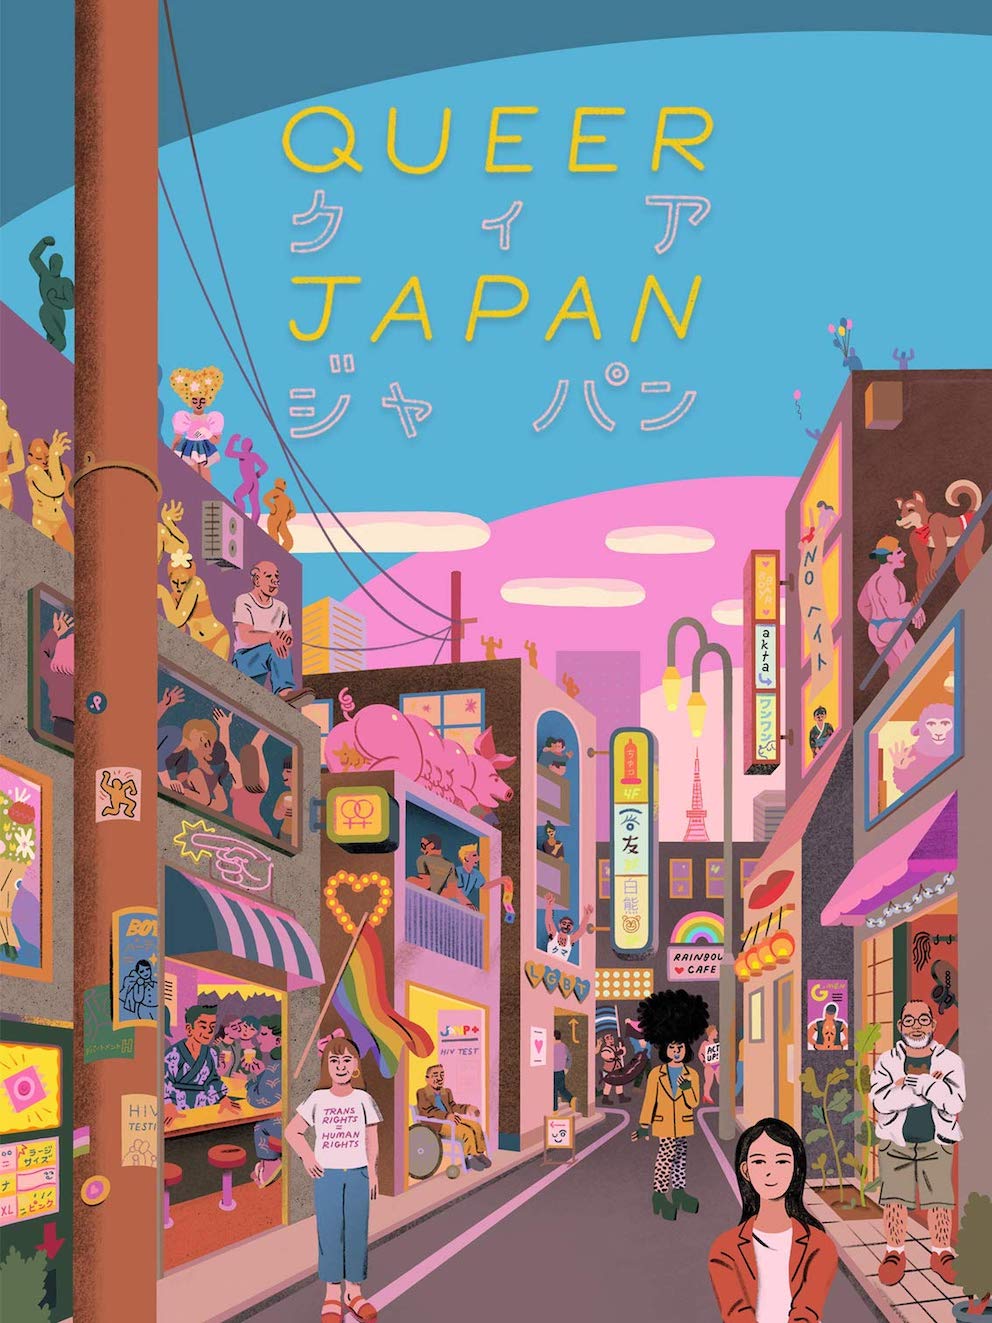 Japanese documentaries - Queer Japan poster